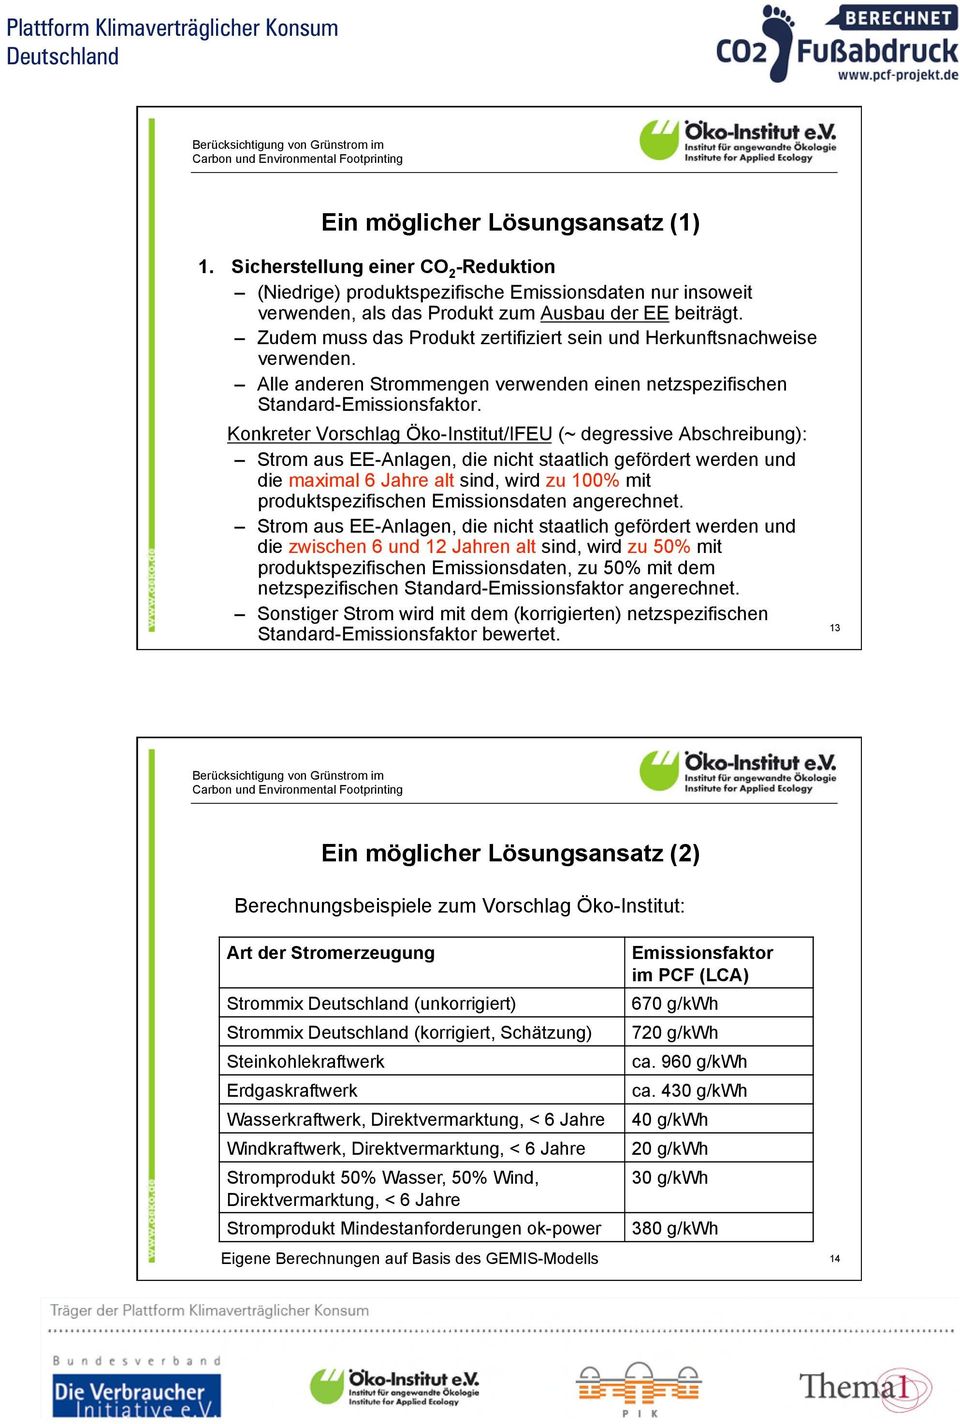 Konkreter Vorschlag Öko-Institut/IFEU (~ degressive Abschreibung): Strom aus EE-Anlagen, die nicht staatlich gefördert werden und die maximal 6 Jahre alt sind, wird zu 100% mit produktspezifischen